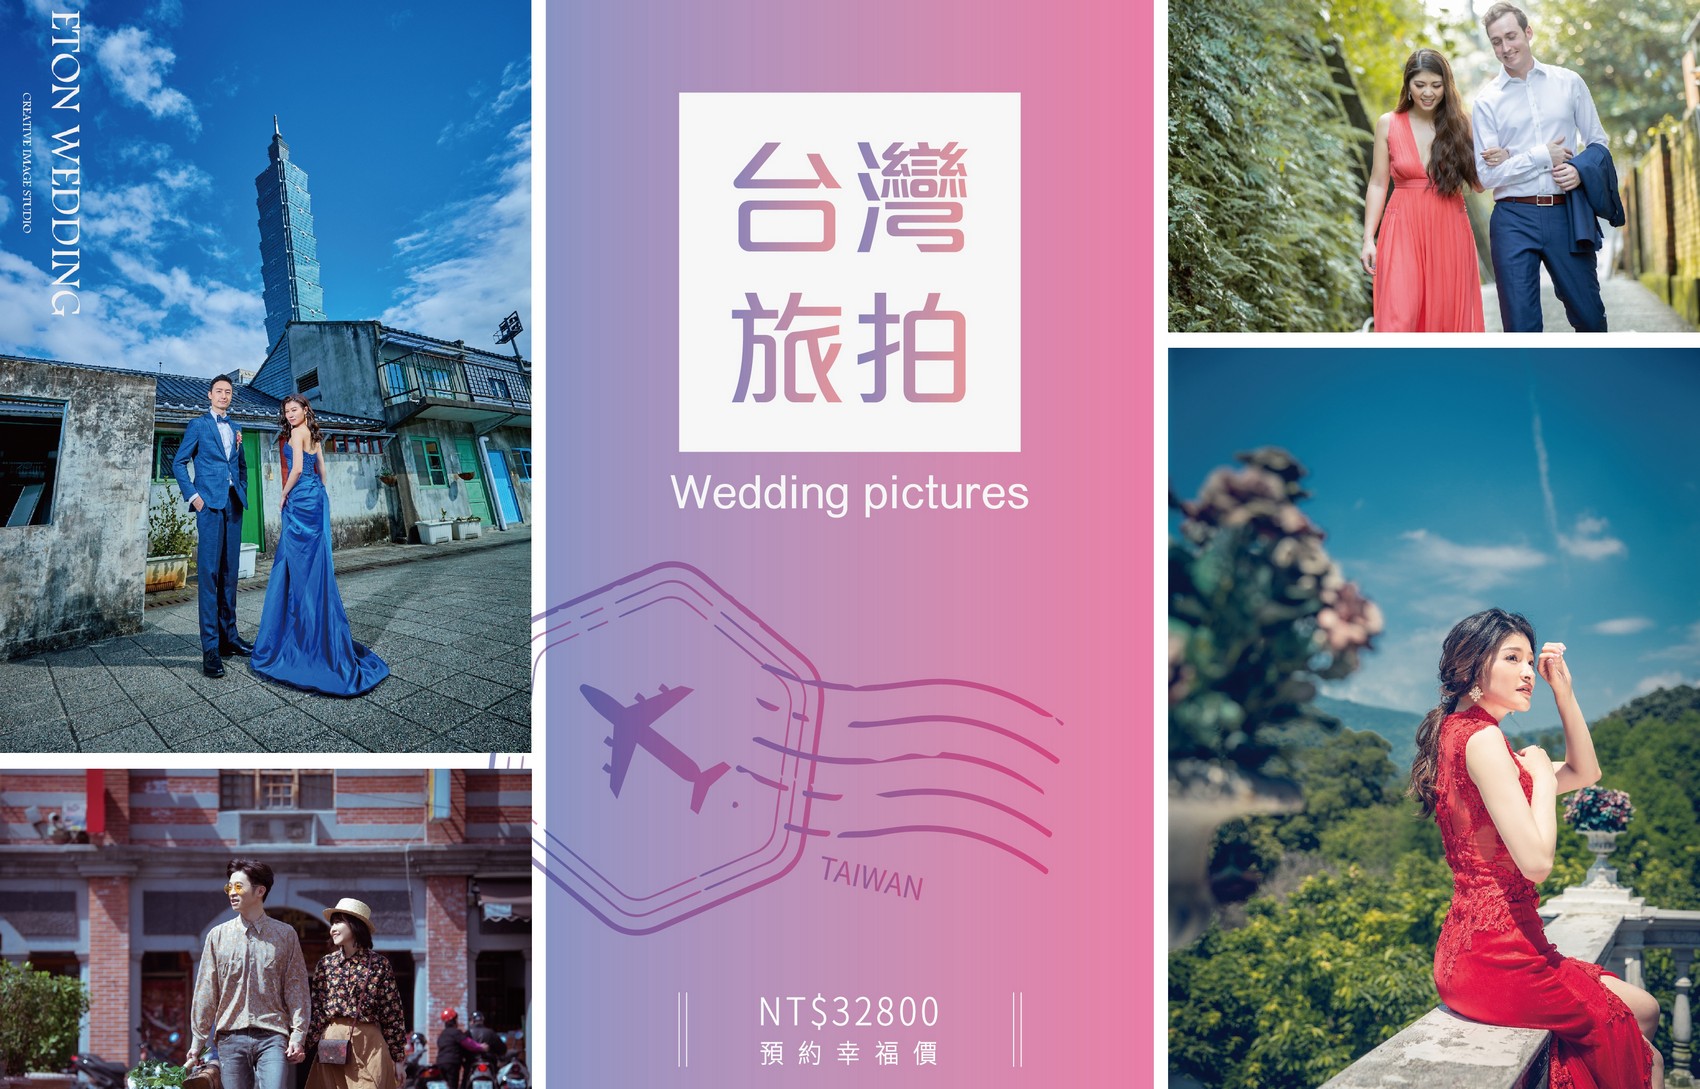 台灣 婚紗工作室,台灣 婚紗攝影價格,雲林拍婚紗,雲林 婚紗攝影,雲林 婚紗工作室